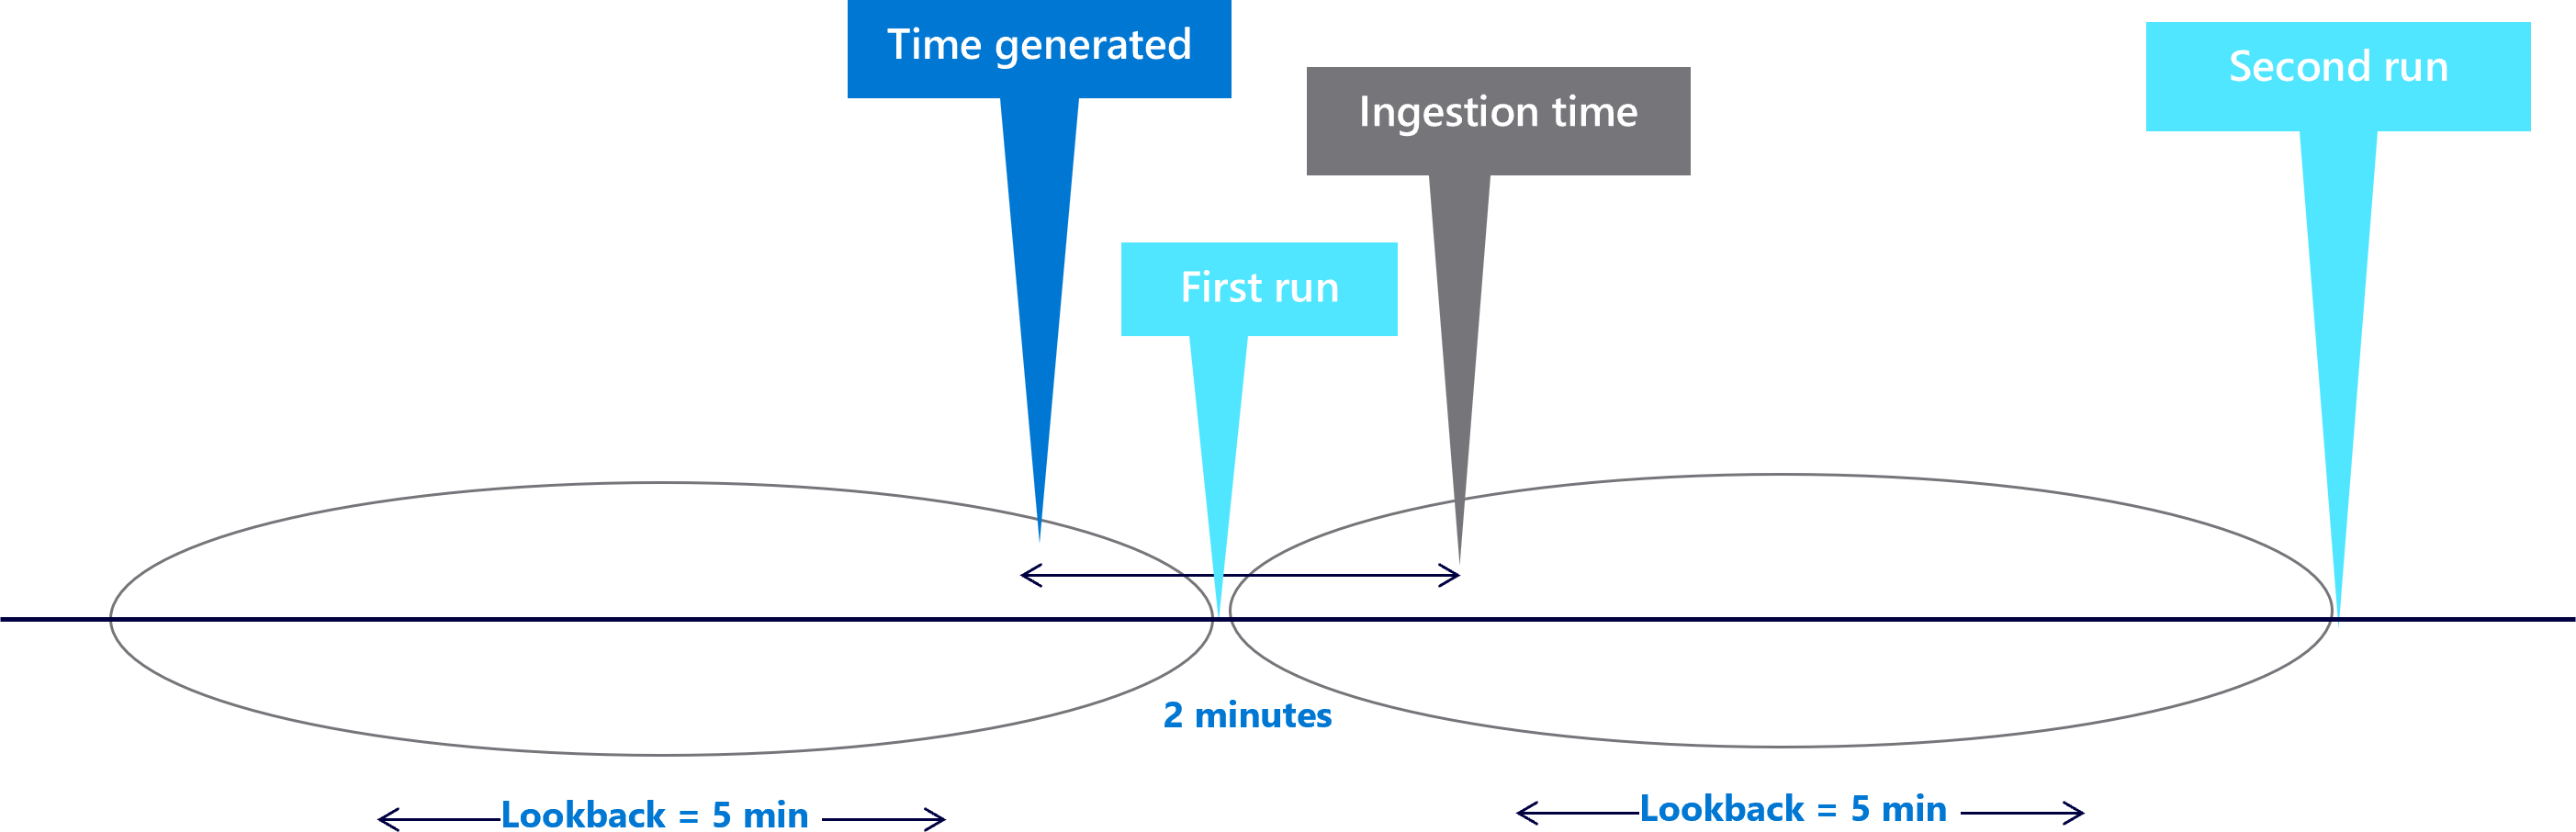 Diagrama mostrando janelas de retorno de cinco minutos com um atraso de dois minutos.